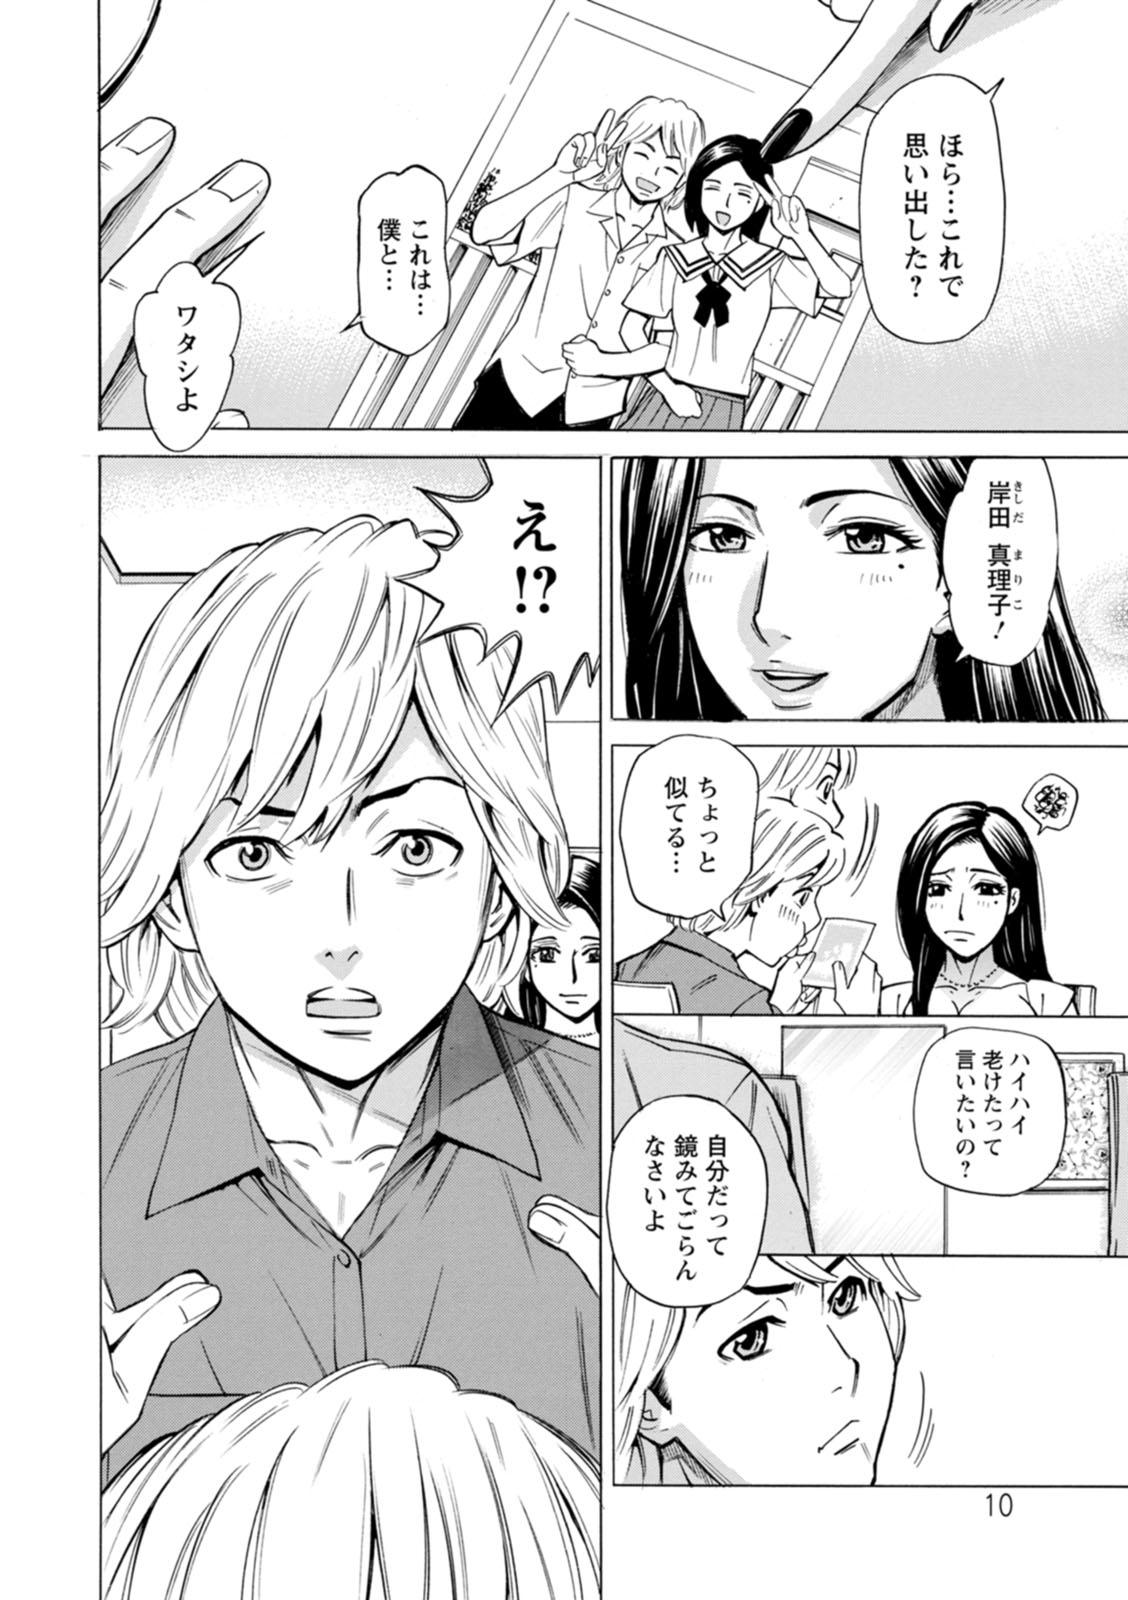 4some Furidashinimodoru Humiliation - Page 10